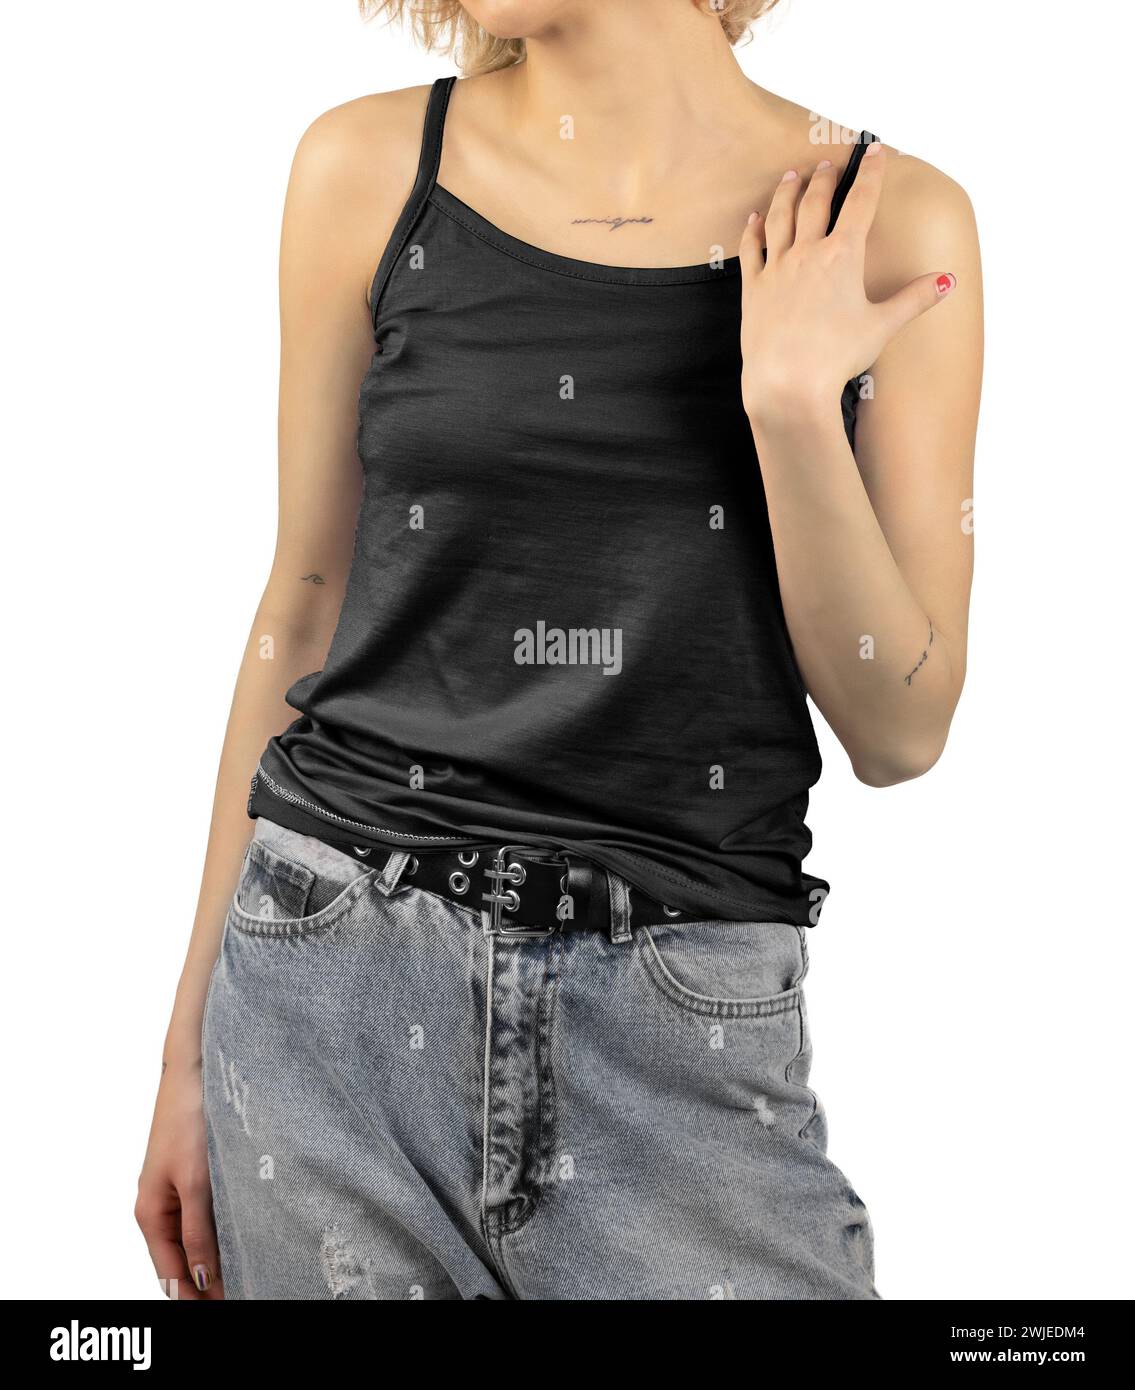 Frau mit schwarzem Tanktop, weißem Hintergrund. Modell, leer, bereit für Design. Stockfoto